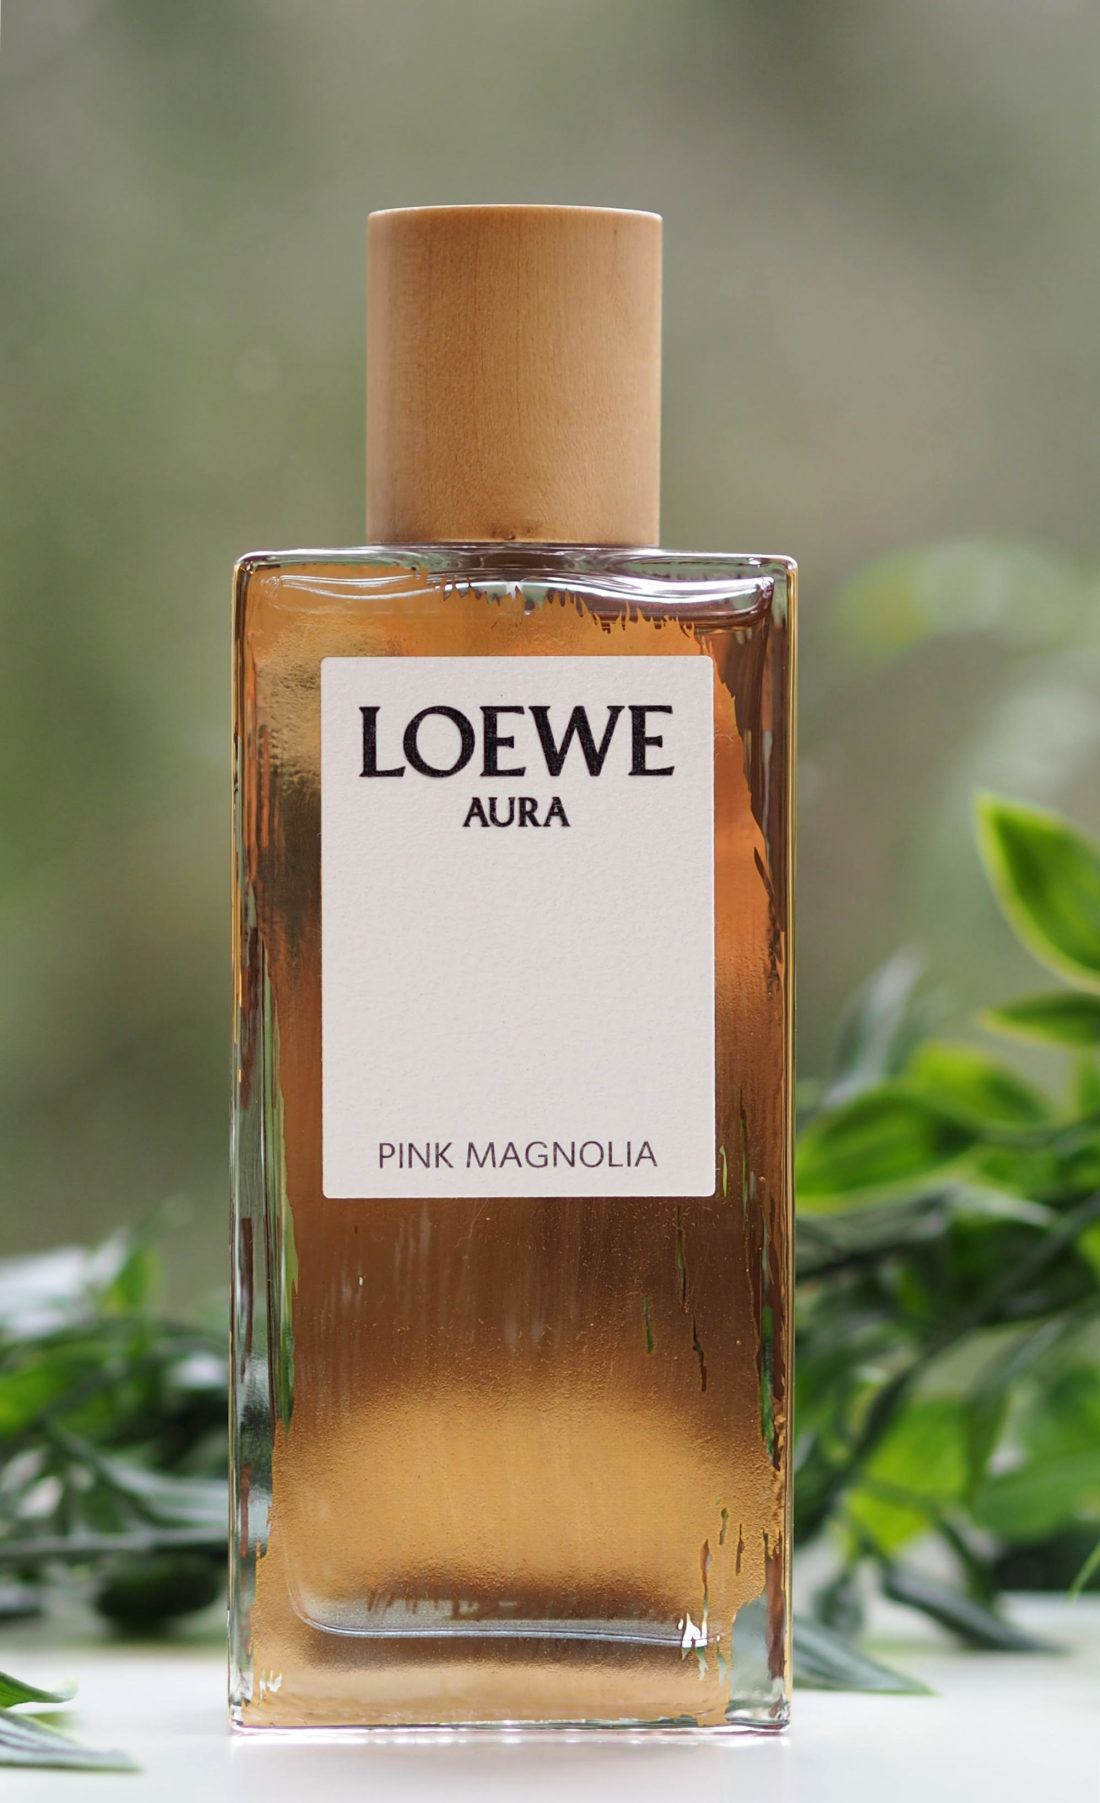 Loewe Aura Pink Magnolia Eau de Parfum 100 ml - LOEWE